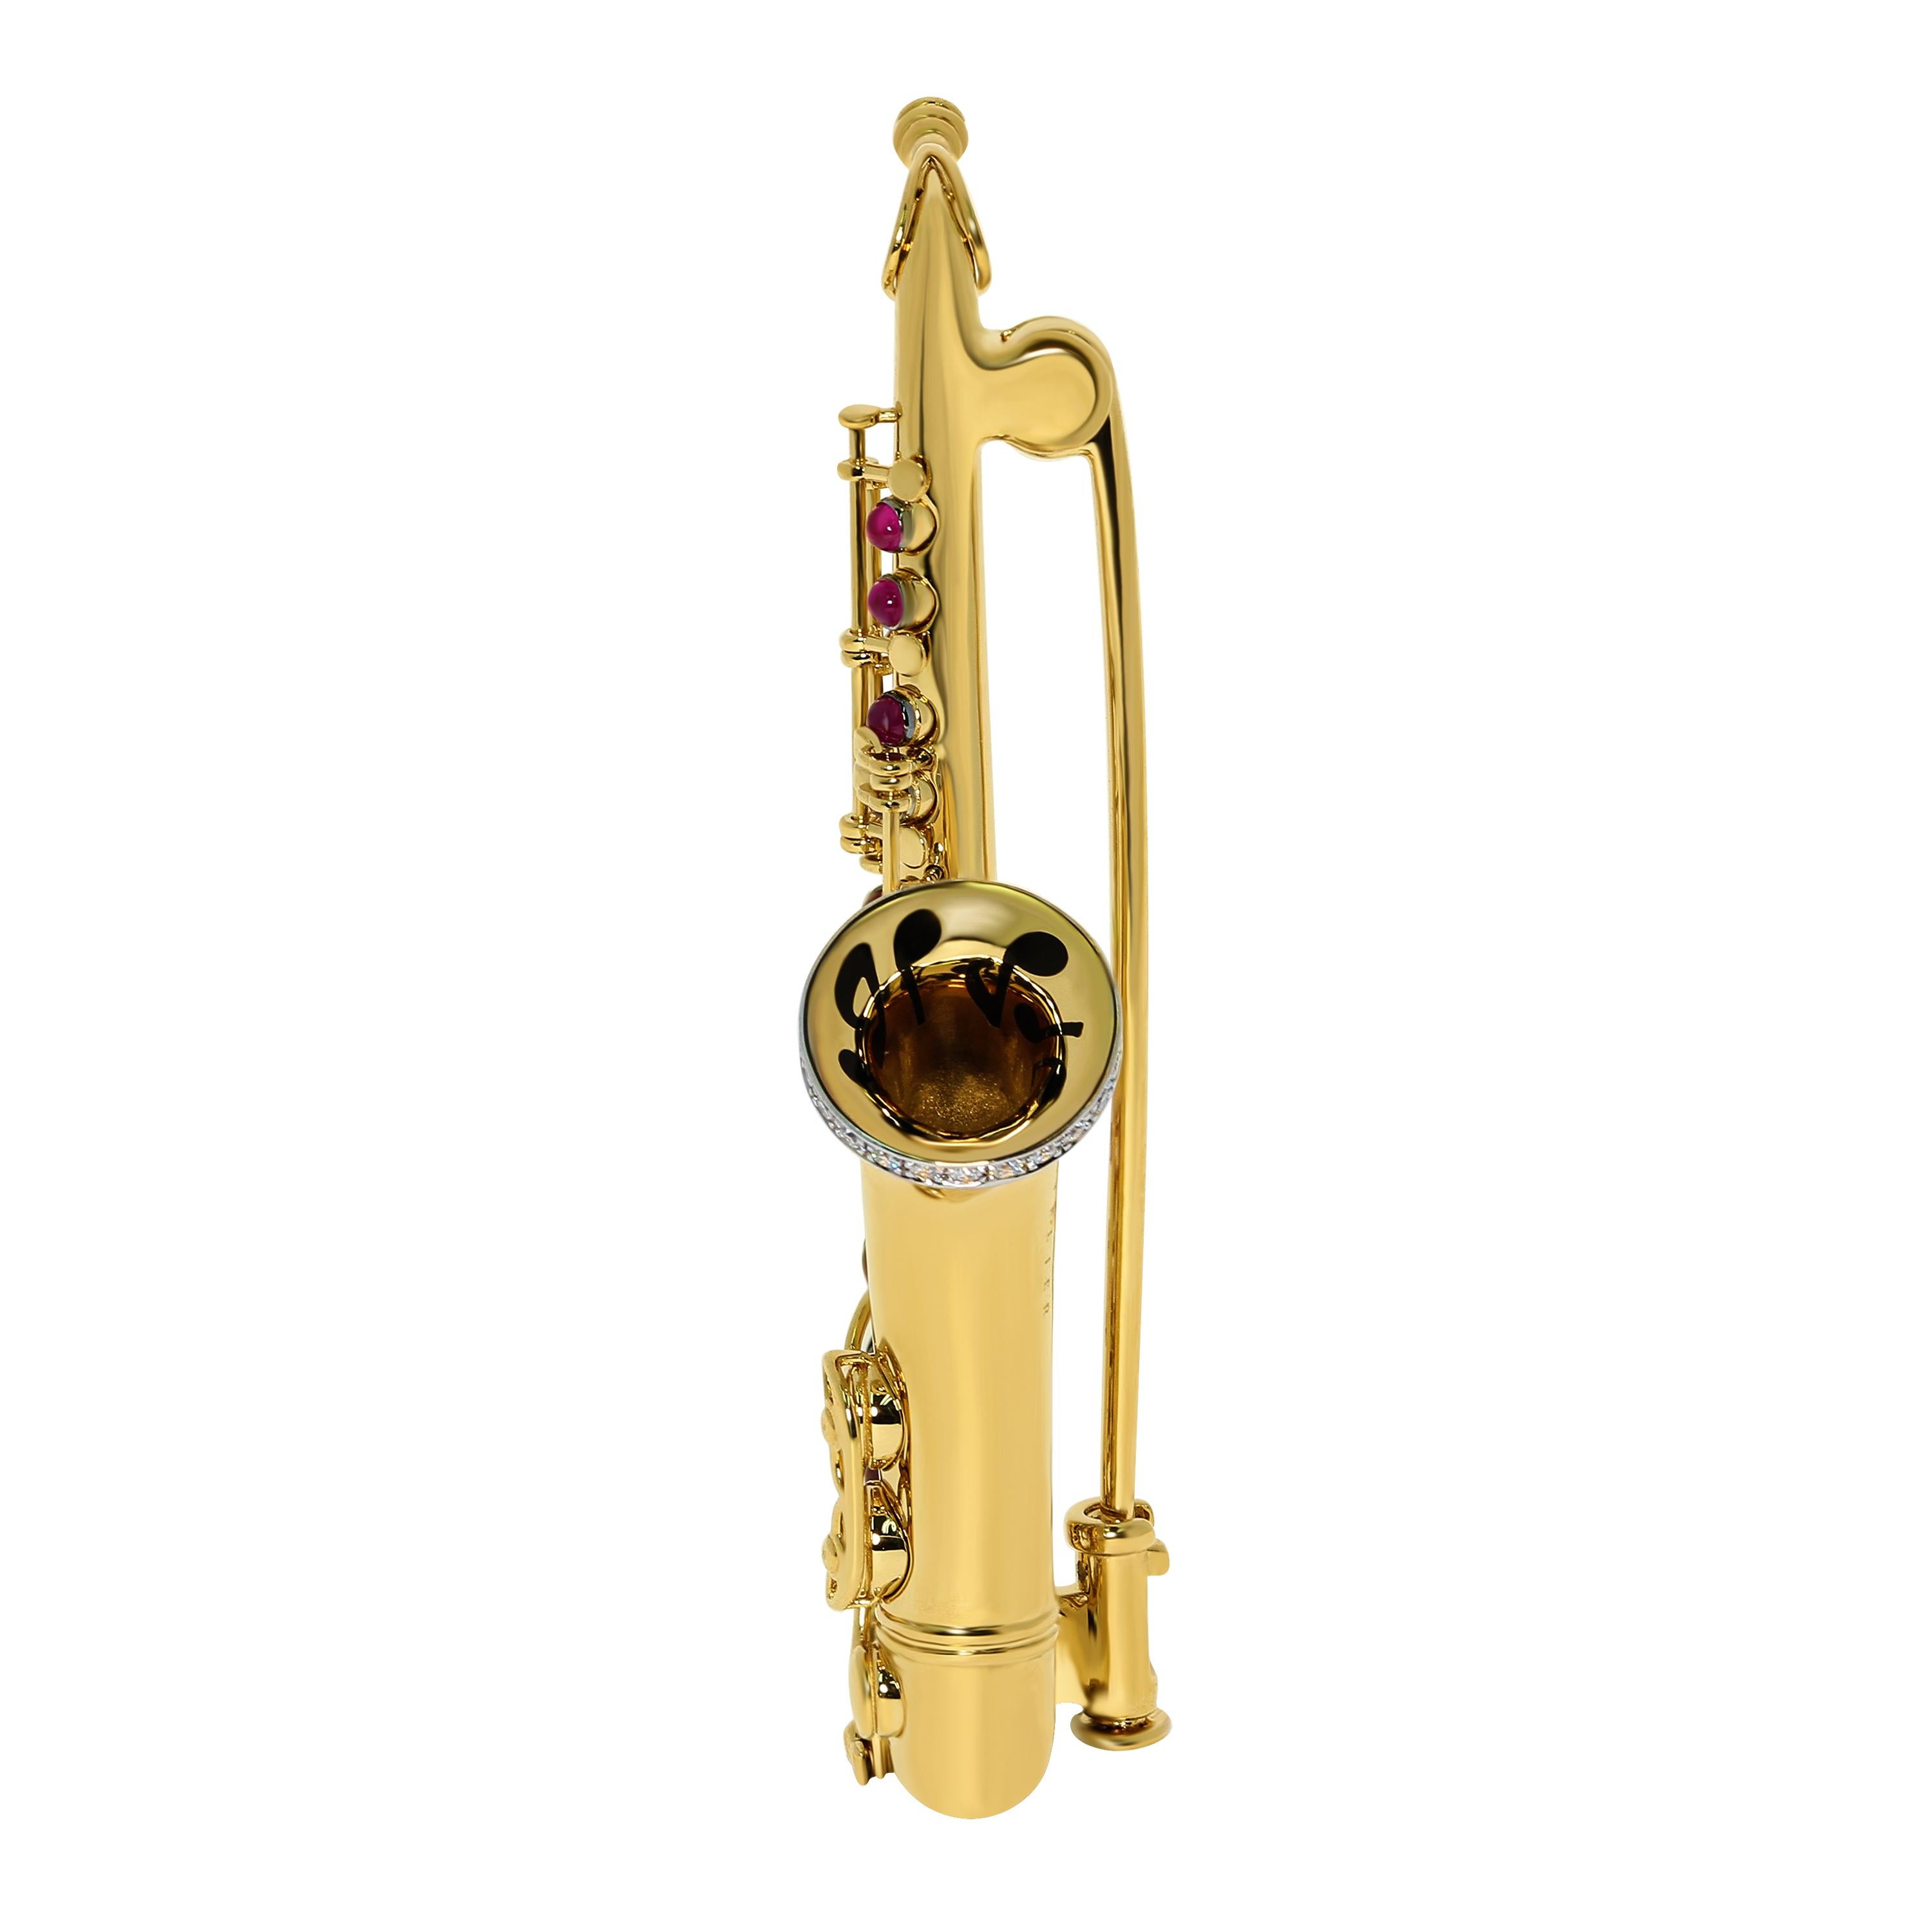 Diamanten Rubine Saxophon 18 Karat Gelbgold Brosche
In den Reihen unserer Musikinstrumente gibt es Nachschub. Was fällt Ihnen ein, wenn Sie Namen wie Charlie Parker, John Coltrane oder Sonny Rollins erwähnen?
Natürlich, das Saxophon! Das Instrument,